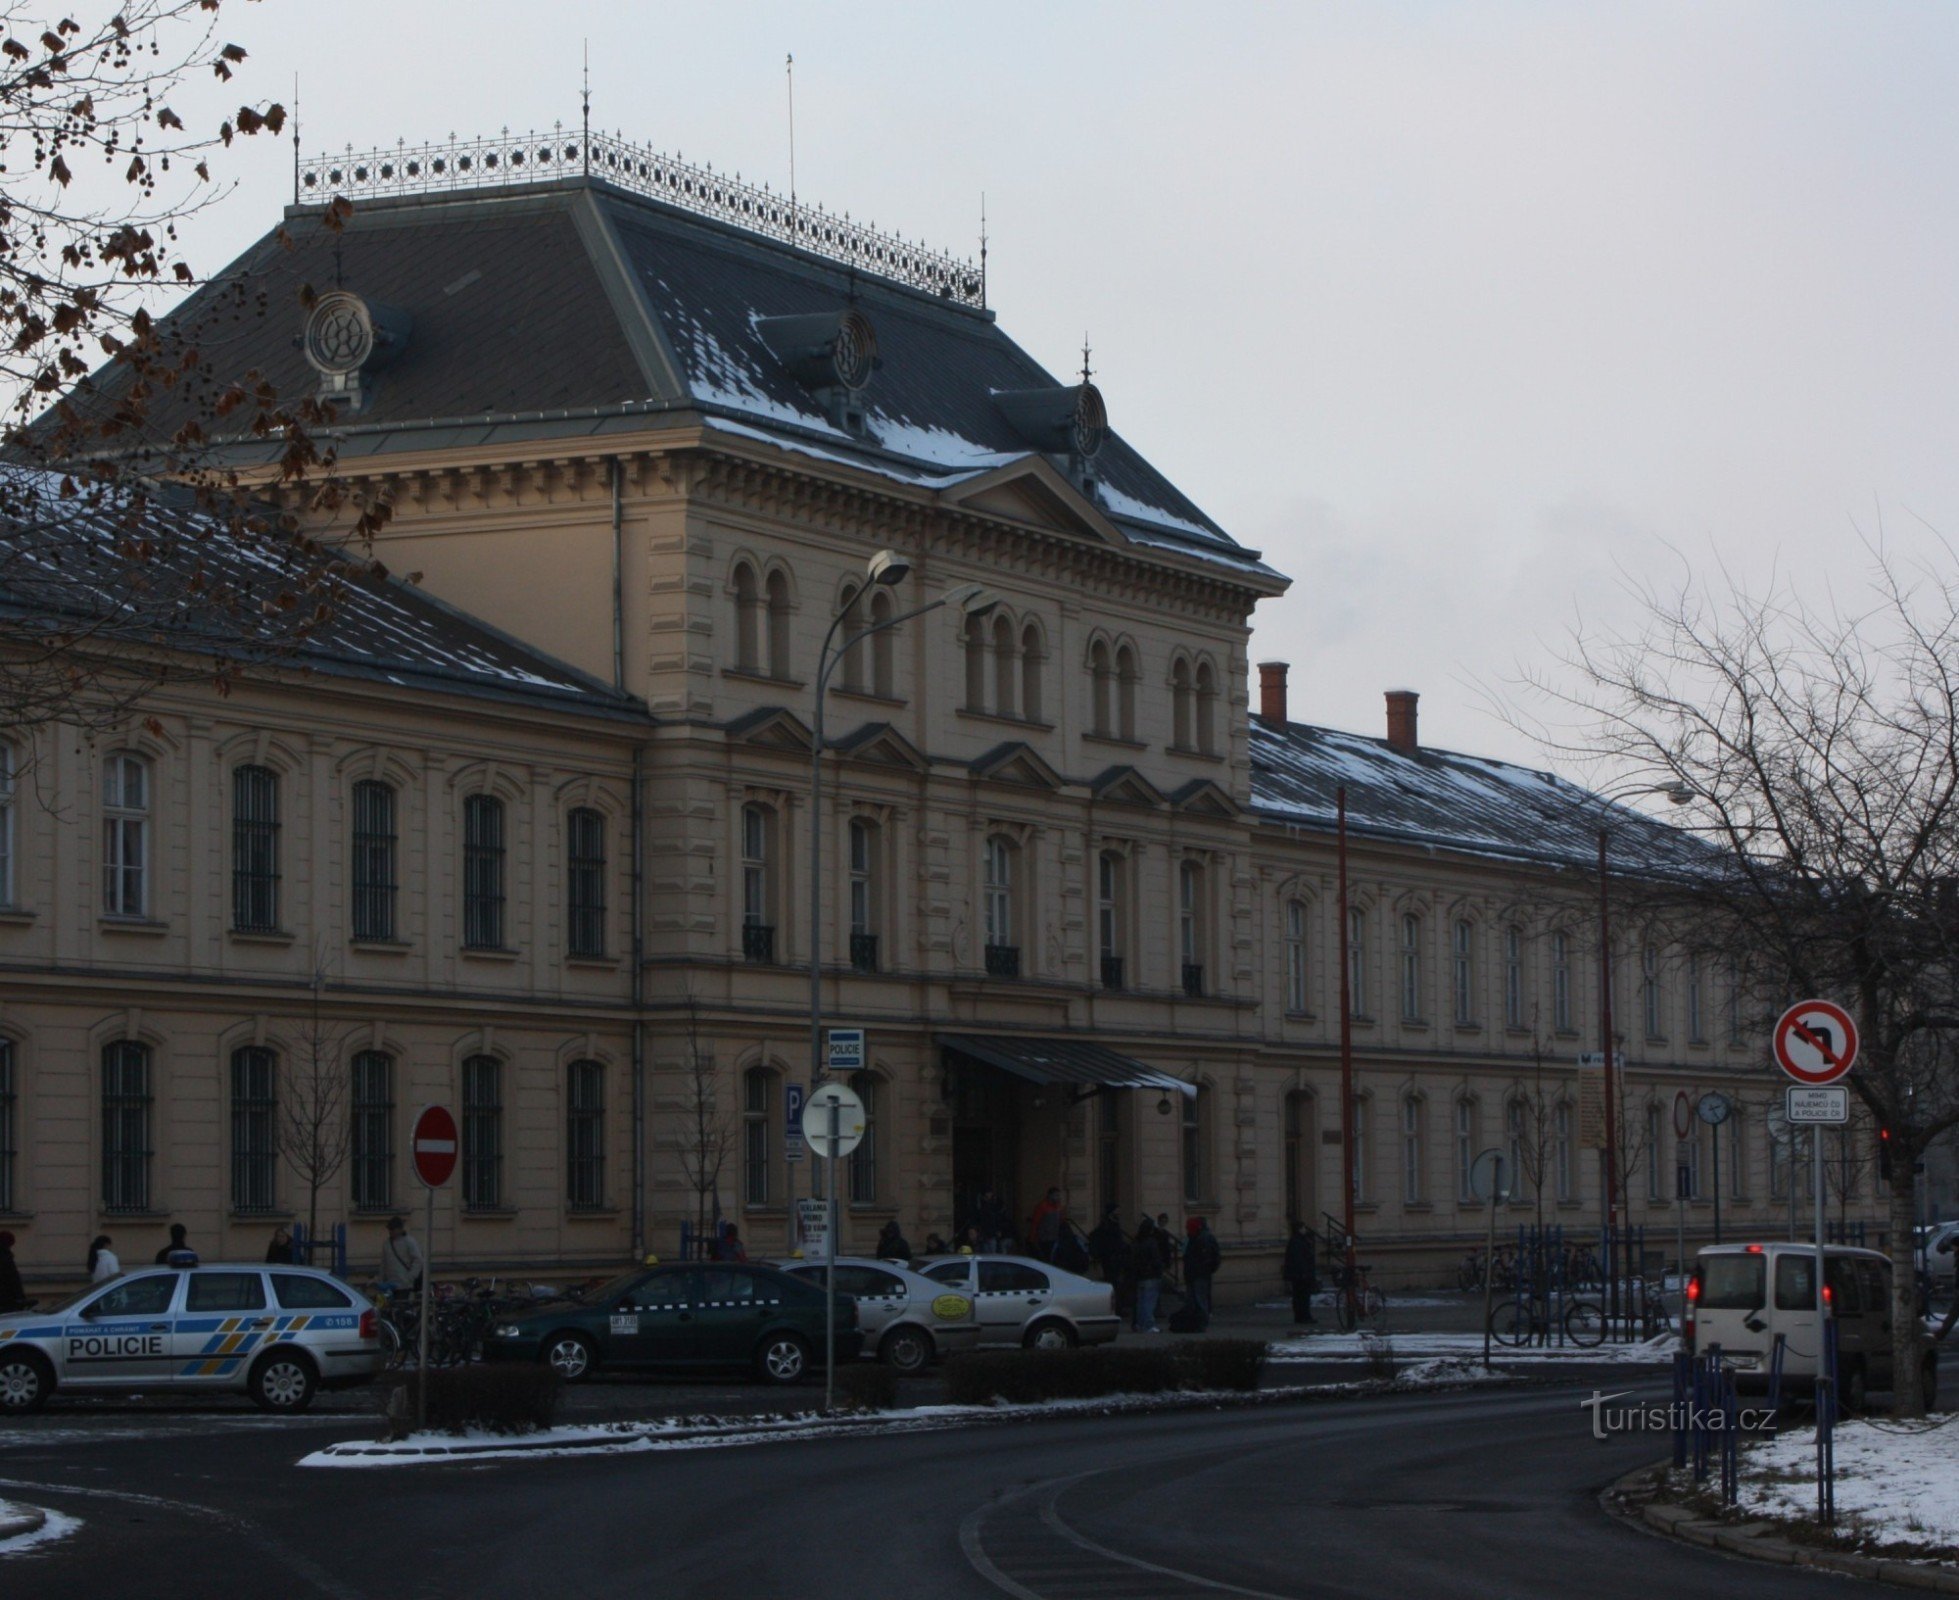 Vue générale du bâtiment d'accueil de la gare de Přerov